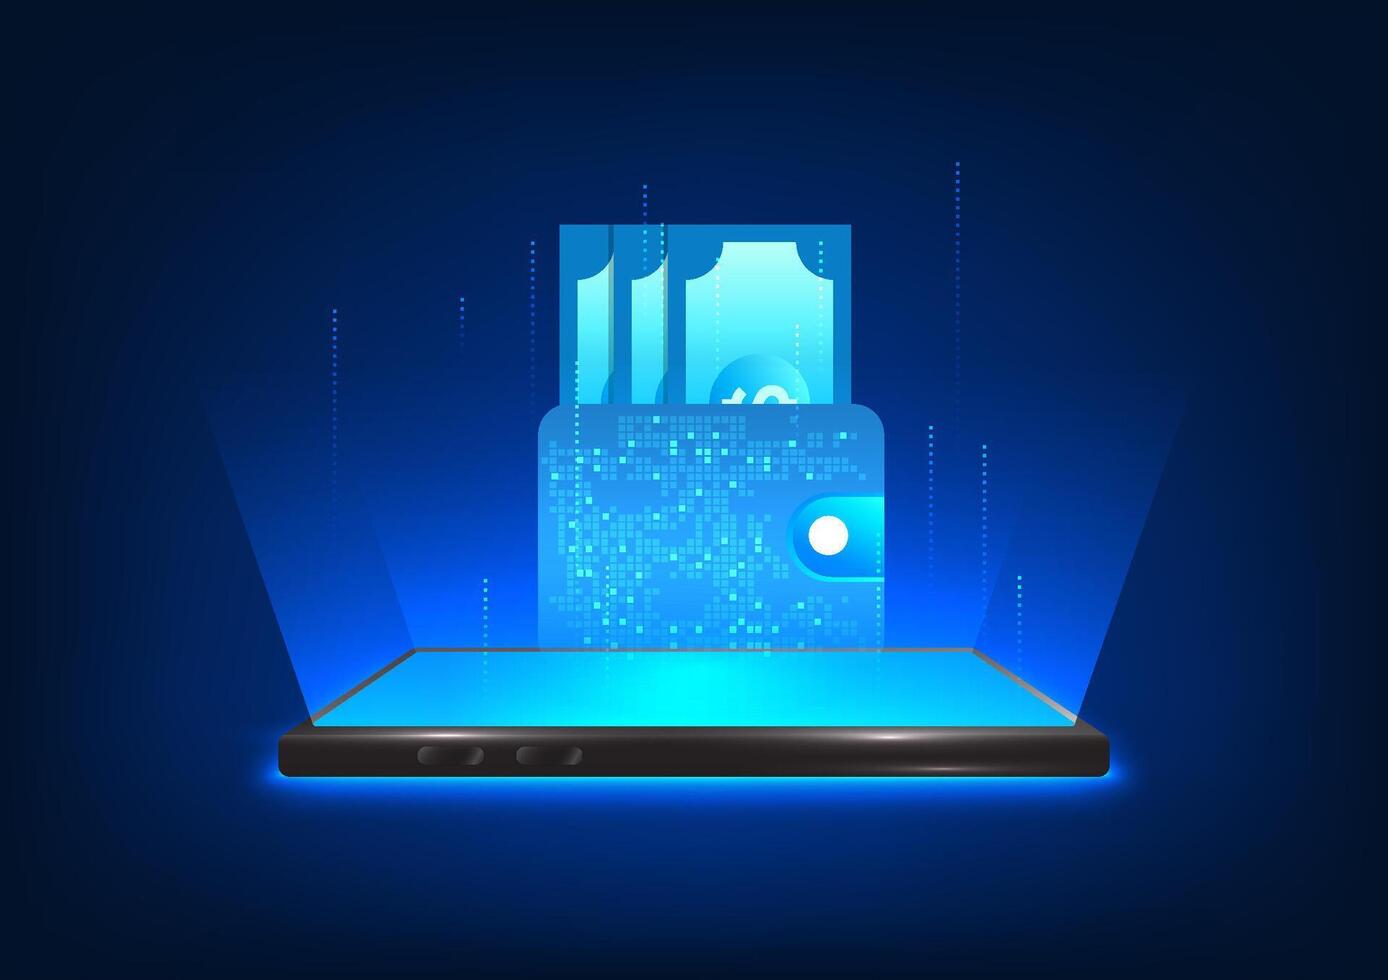 smartphone technologie dat projecten een hologram beeld van uw portemonnee concept van gebruik makend van portemonnee in e-portemonnee het formulier via mobiel telefoon. beide betaling van goederen, deposito's, opnames, geld transfers vector